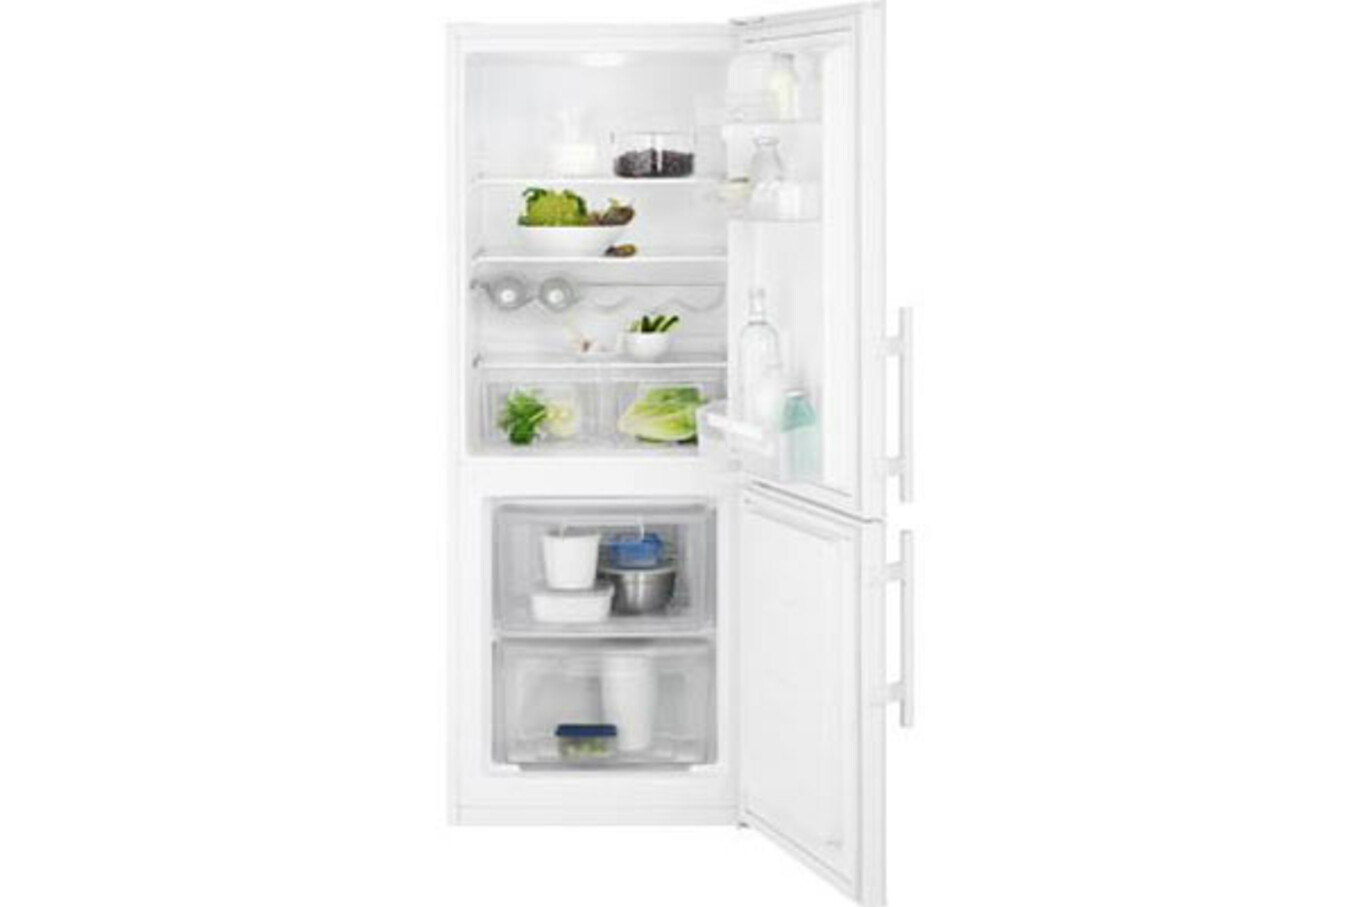 Freistehende Kühlschränke finden Sie in der Bauarena